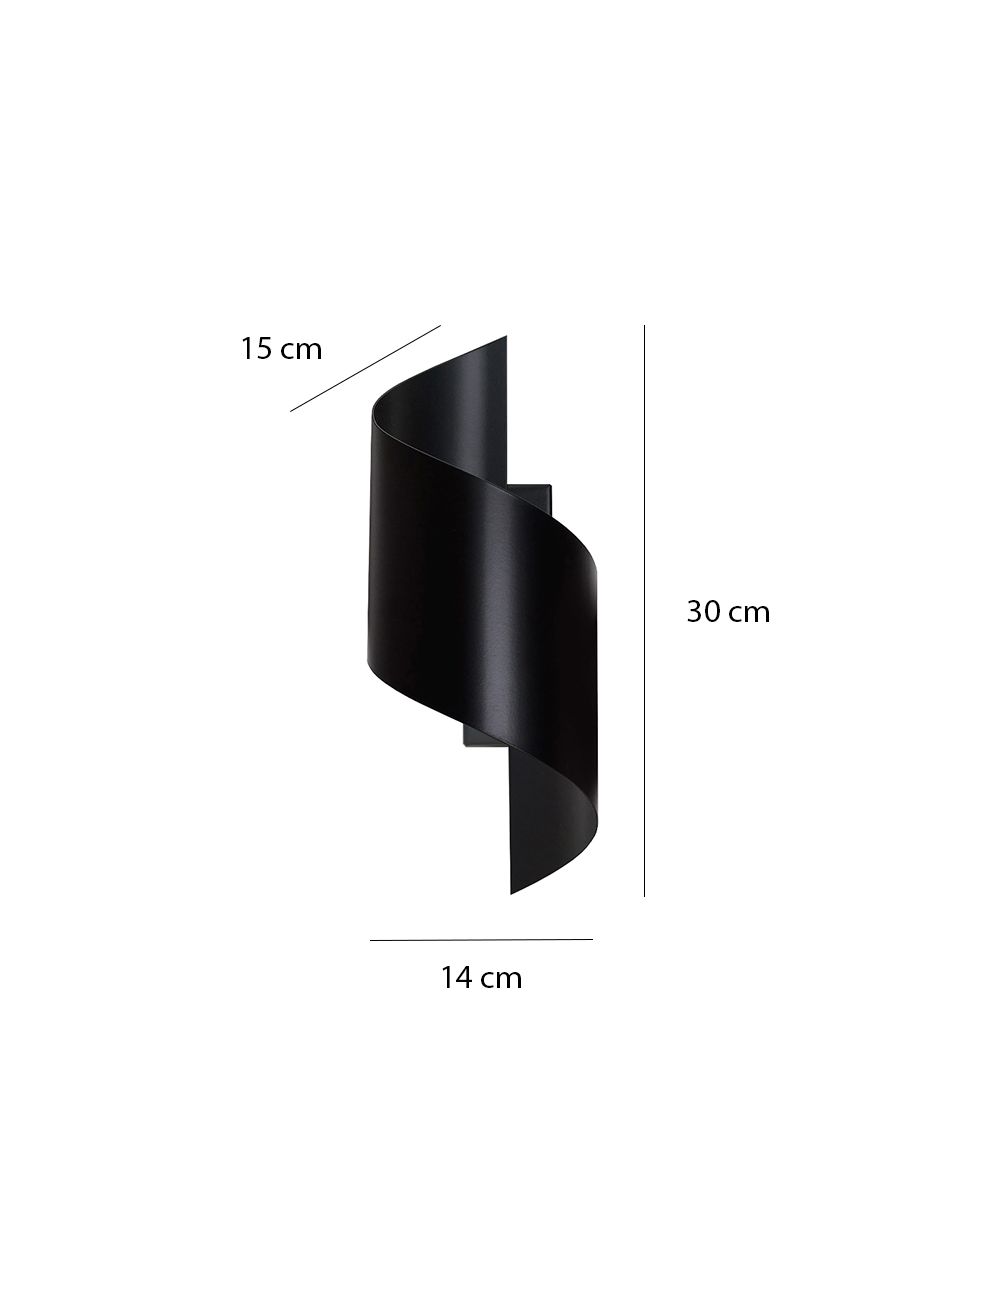 SPINER BLACK 920/2 nowoczesny kinkiet LED zakręcony czarny różne kolory DESIGN EMIBIG